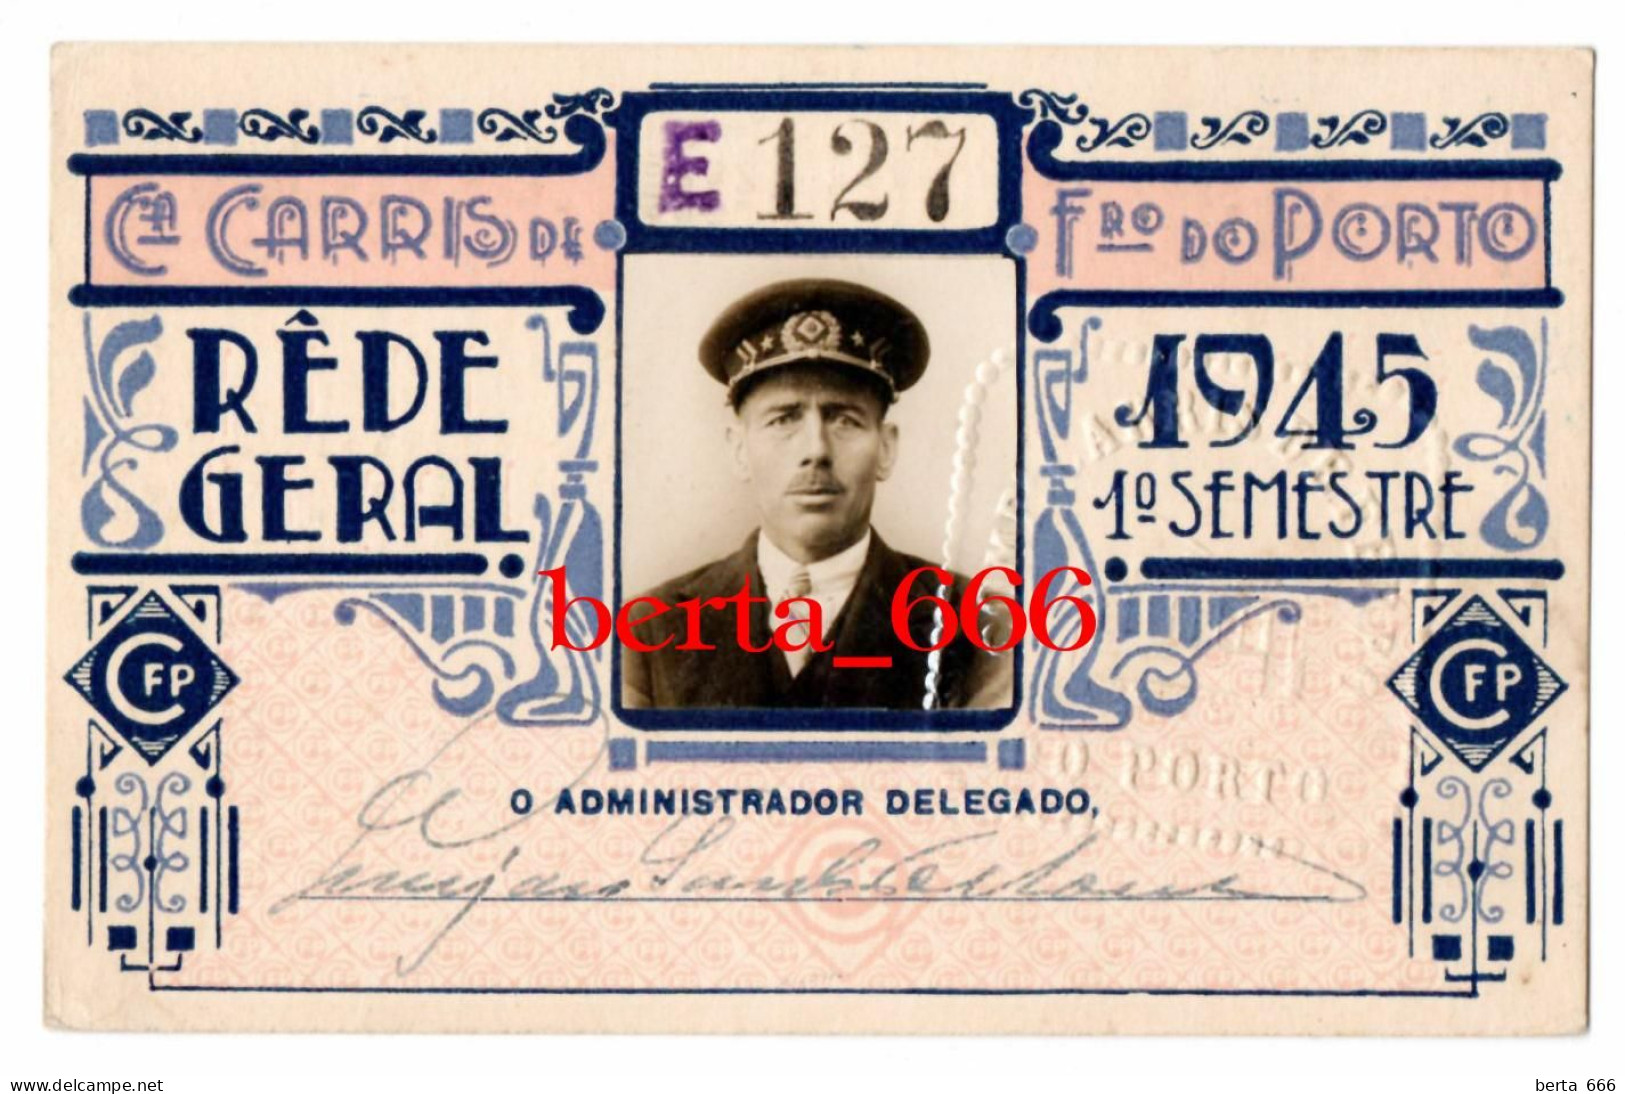 Passe Rede Geral Empregado * Companhia Carris De Ferro Do Porto * 1945 * 1º Semestre * Portugal Tramway Season Ticket - Europe